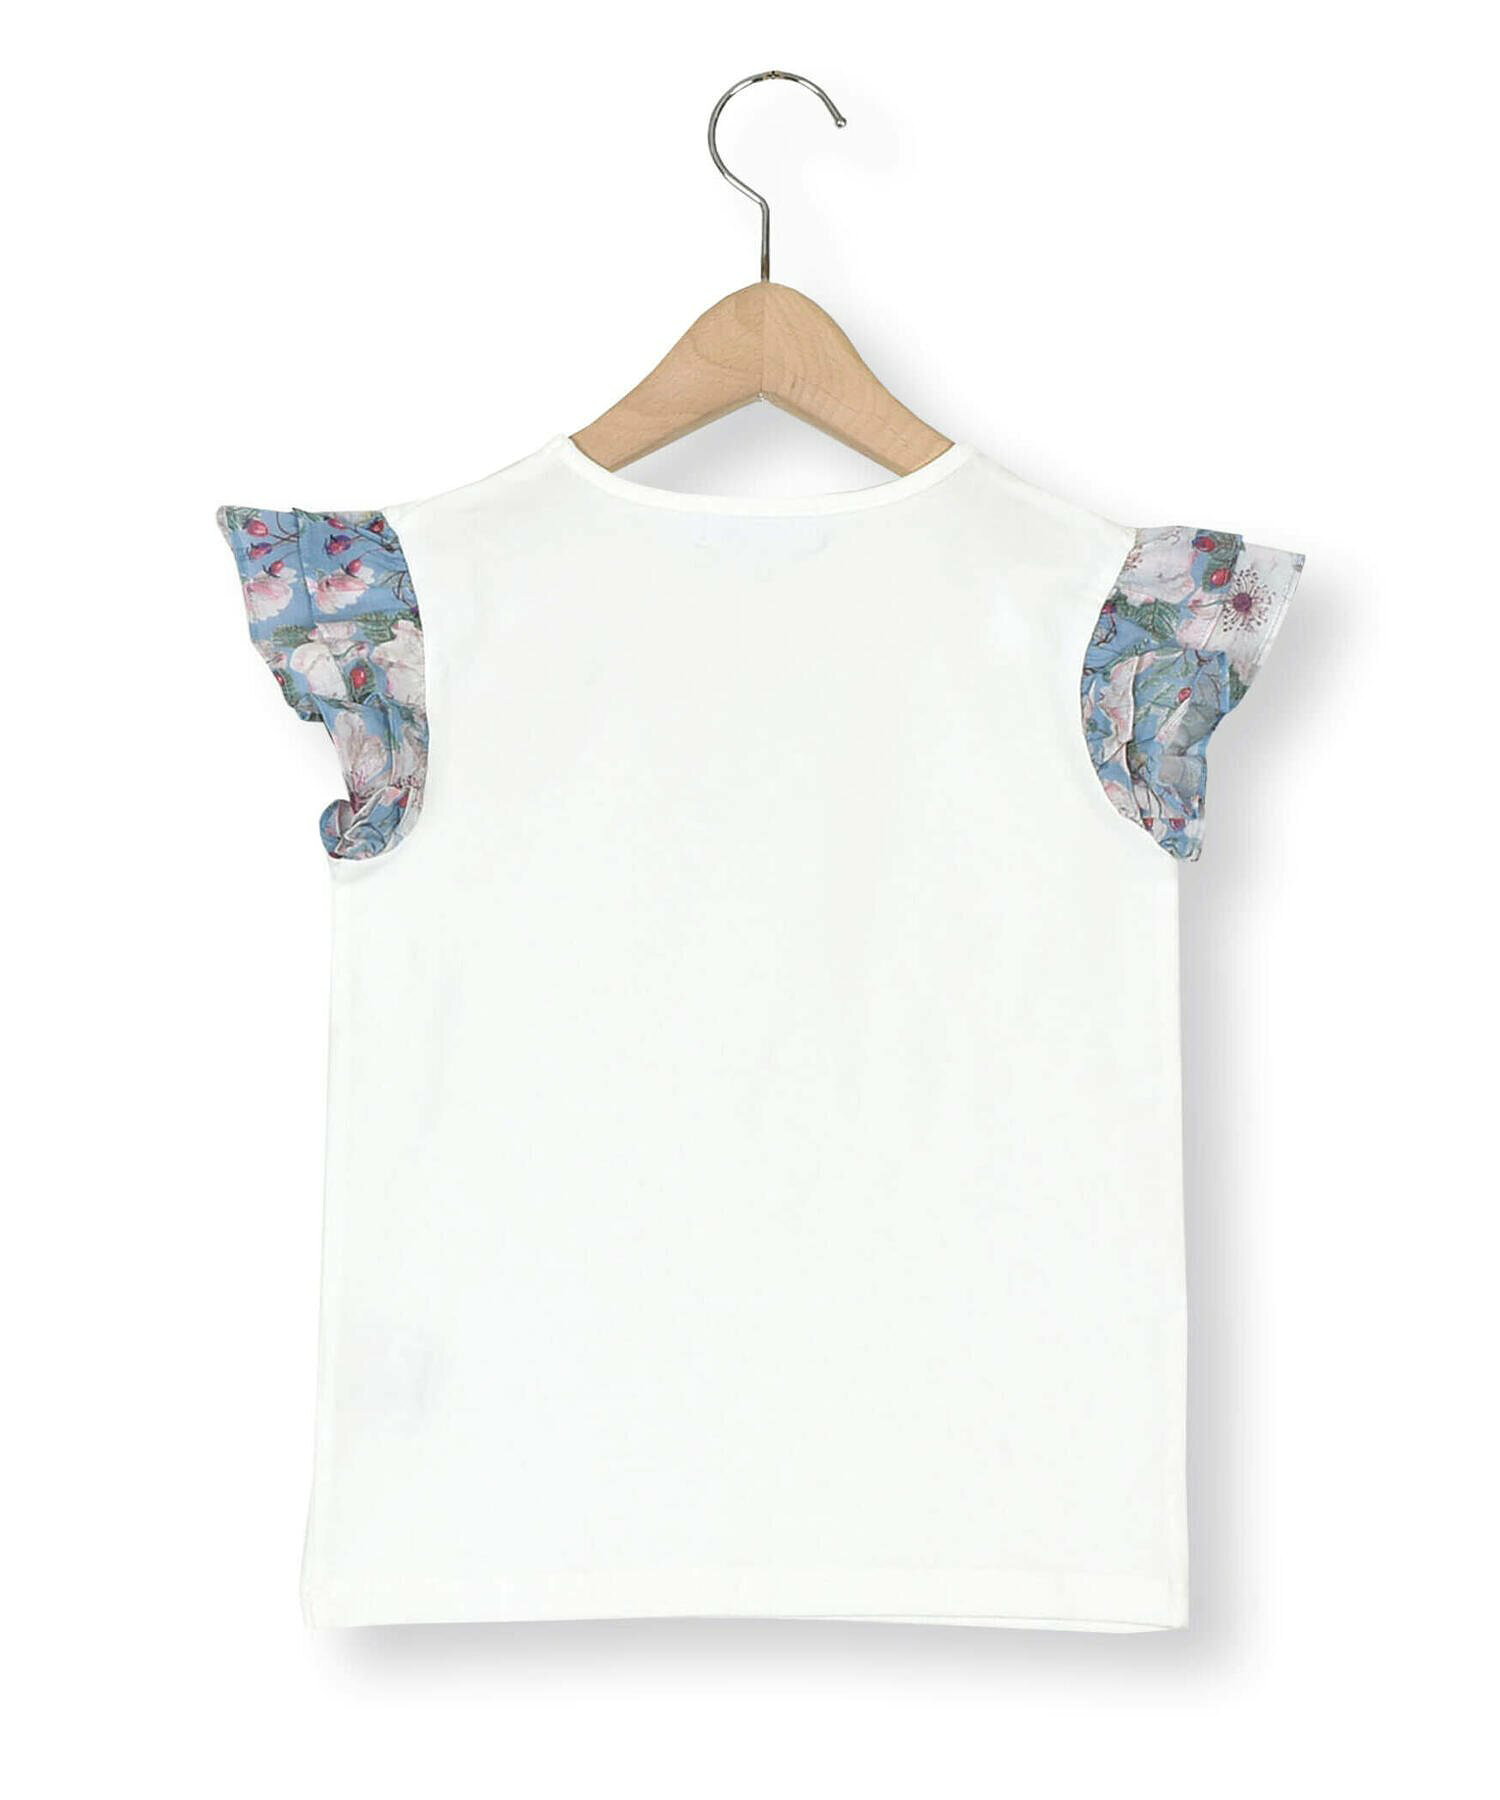 【お揃い】リバティ(DorsetRose)セルロース袖フリル+リボン付き半袖Tシャツ(90~140cm)